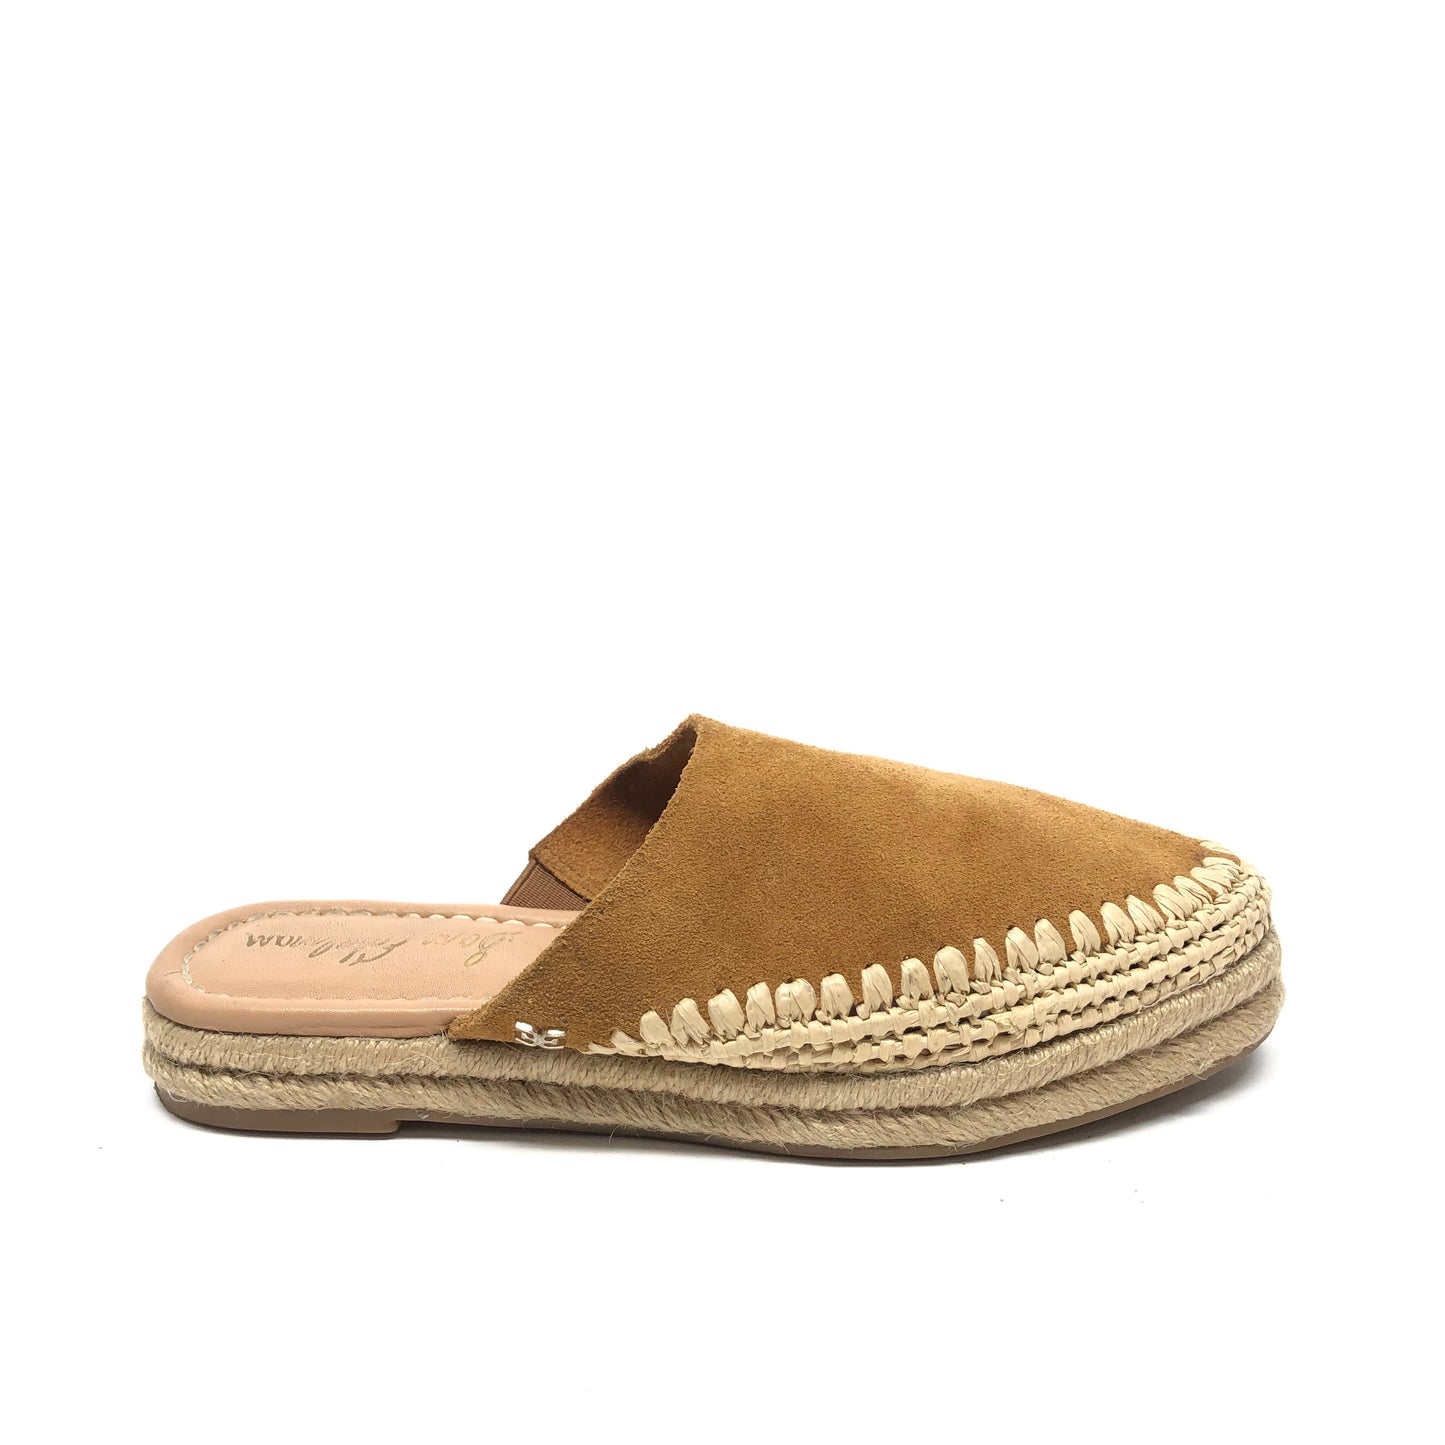 Brown Shoes Flats Mule & Slides Sam Edelman, Size 5.5